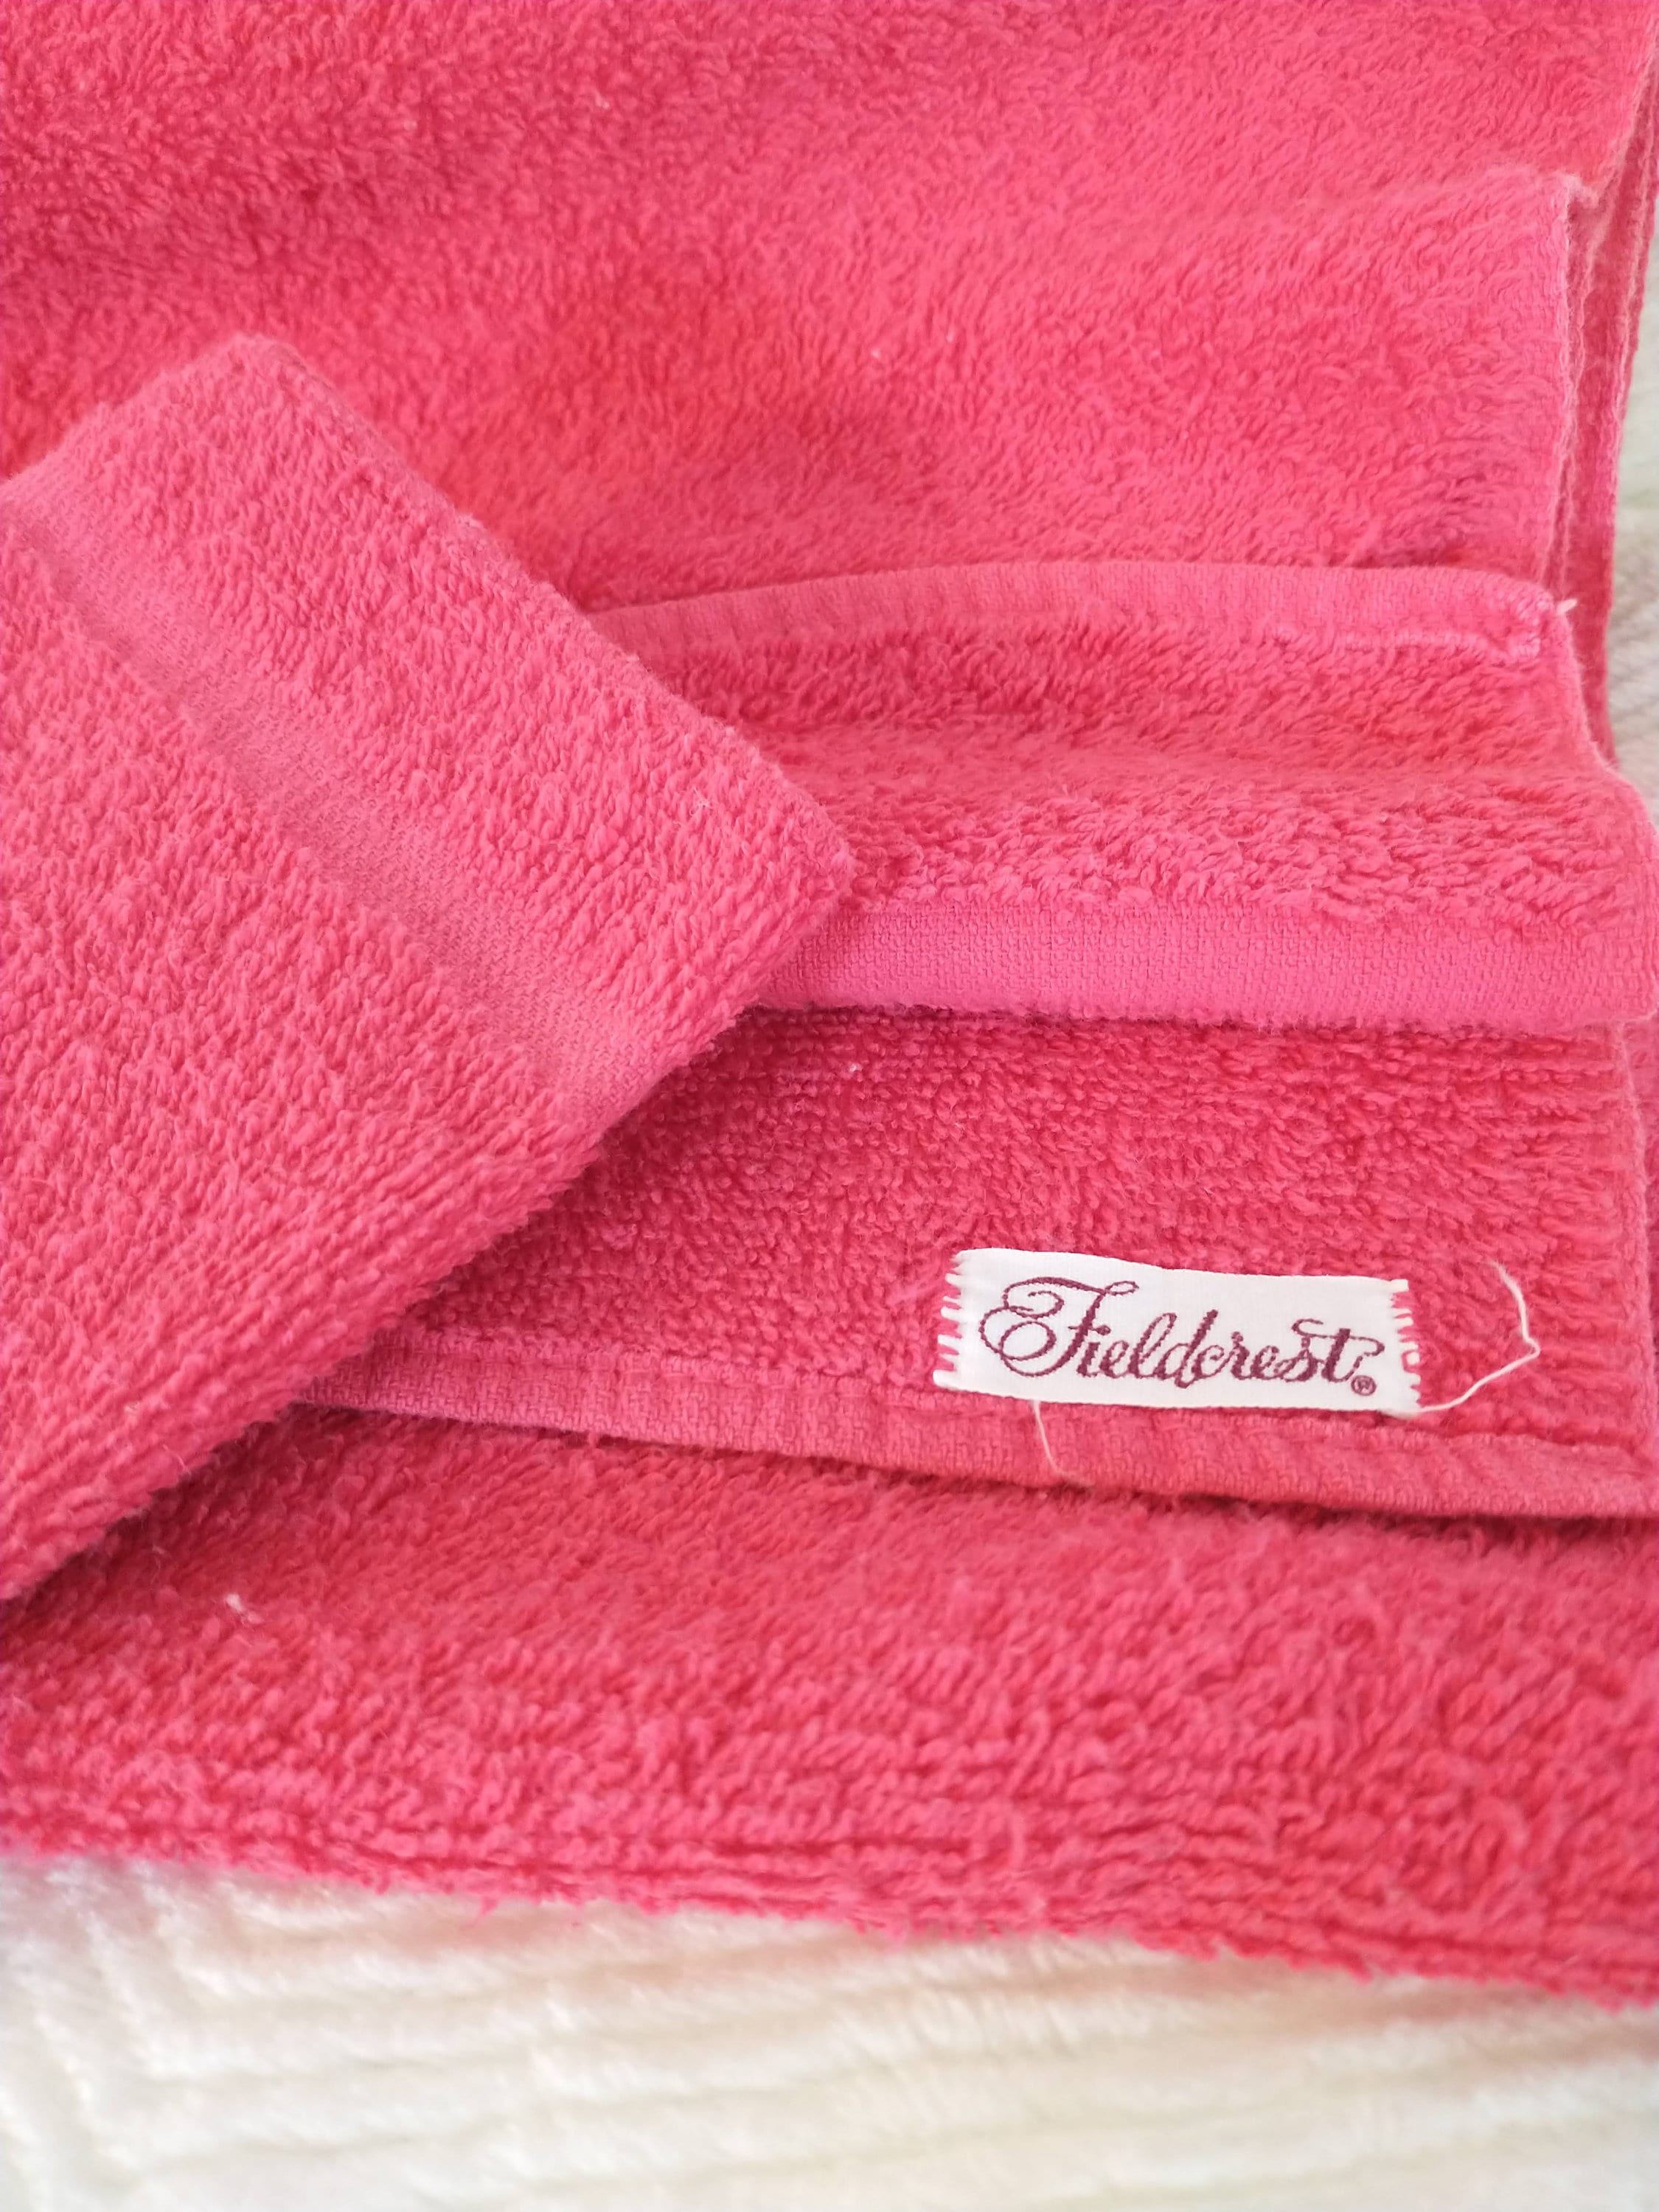  Fieldcrest Towels